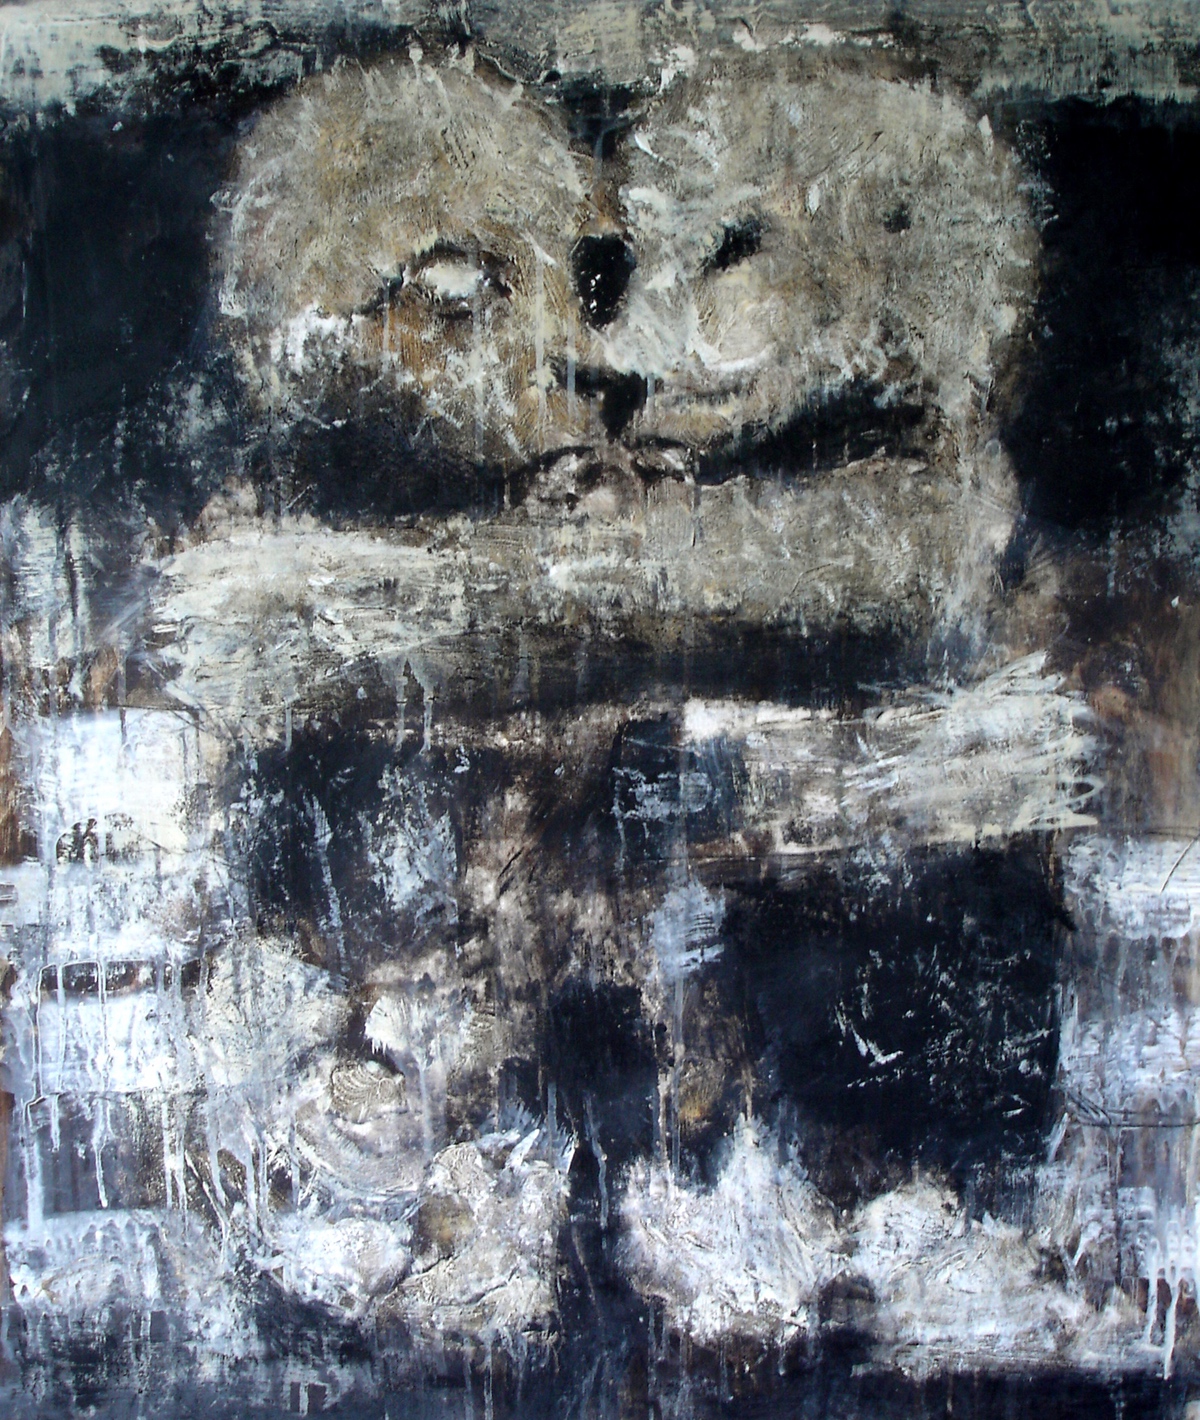 “Omfavnelse”, Fra Alnay-kirken, 2005, 81 x 65 cm. Akryl, olie og sand på lærred. (Carsten Frank nr. 1094) Privat